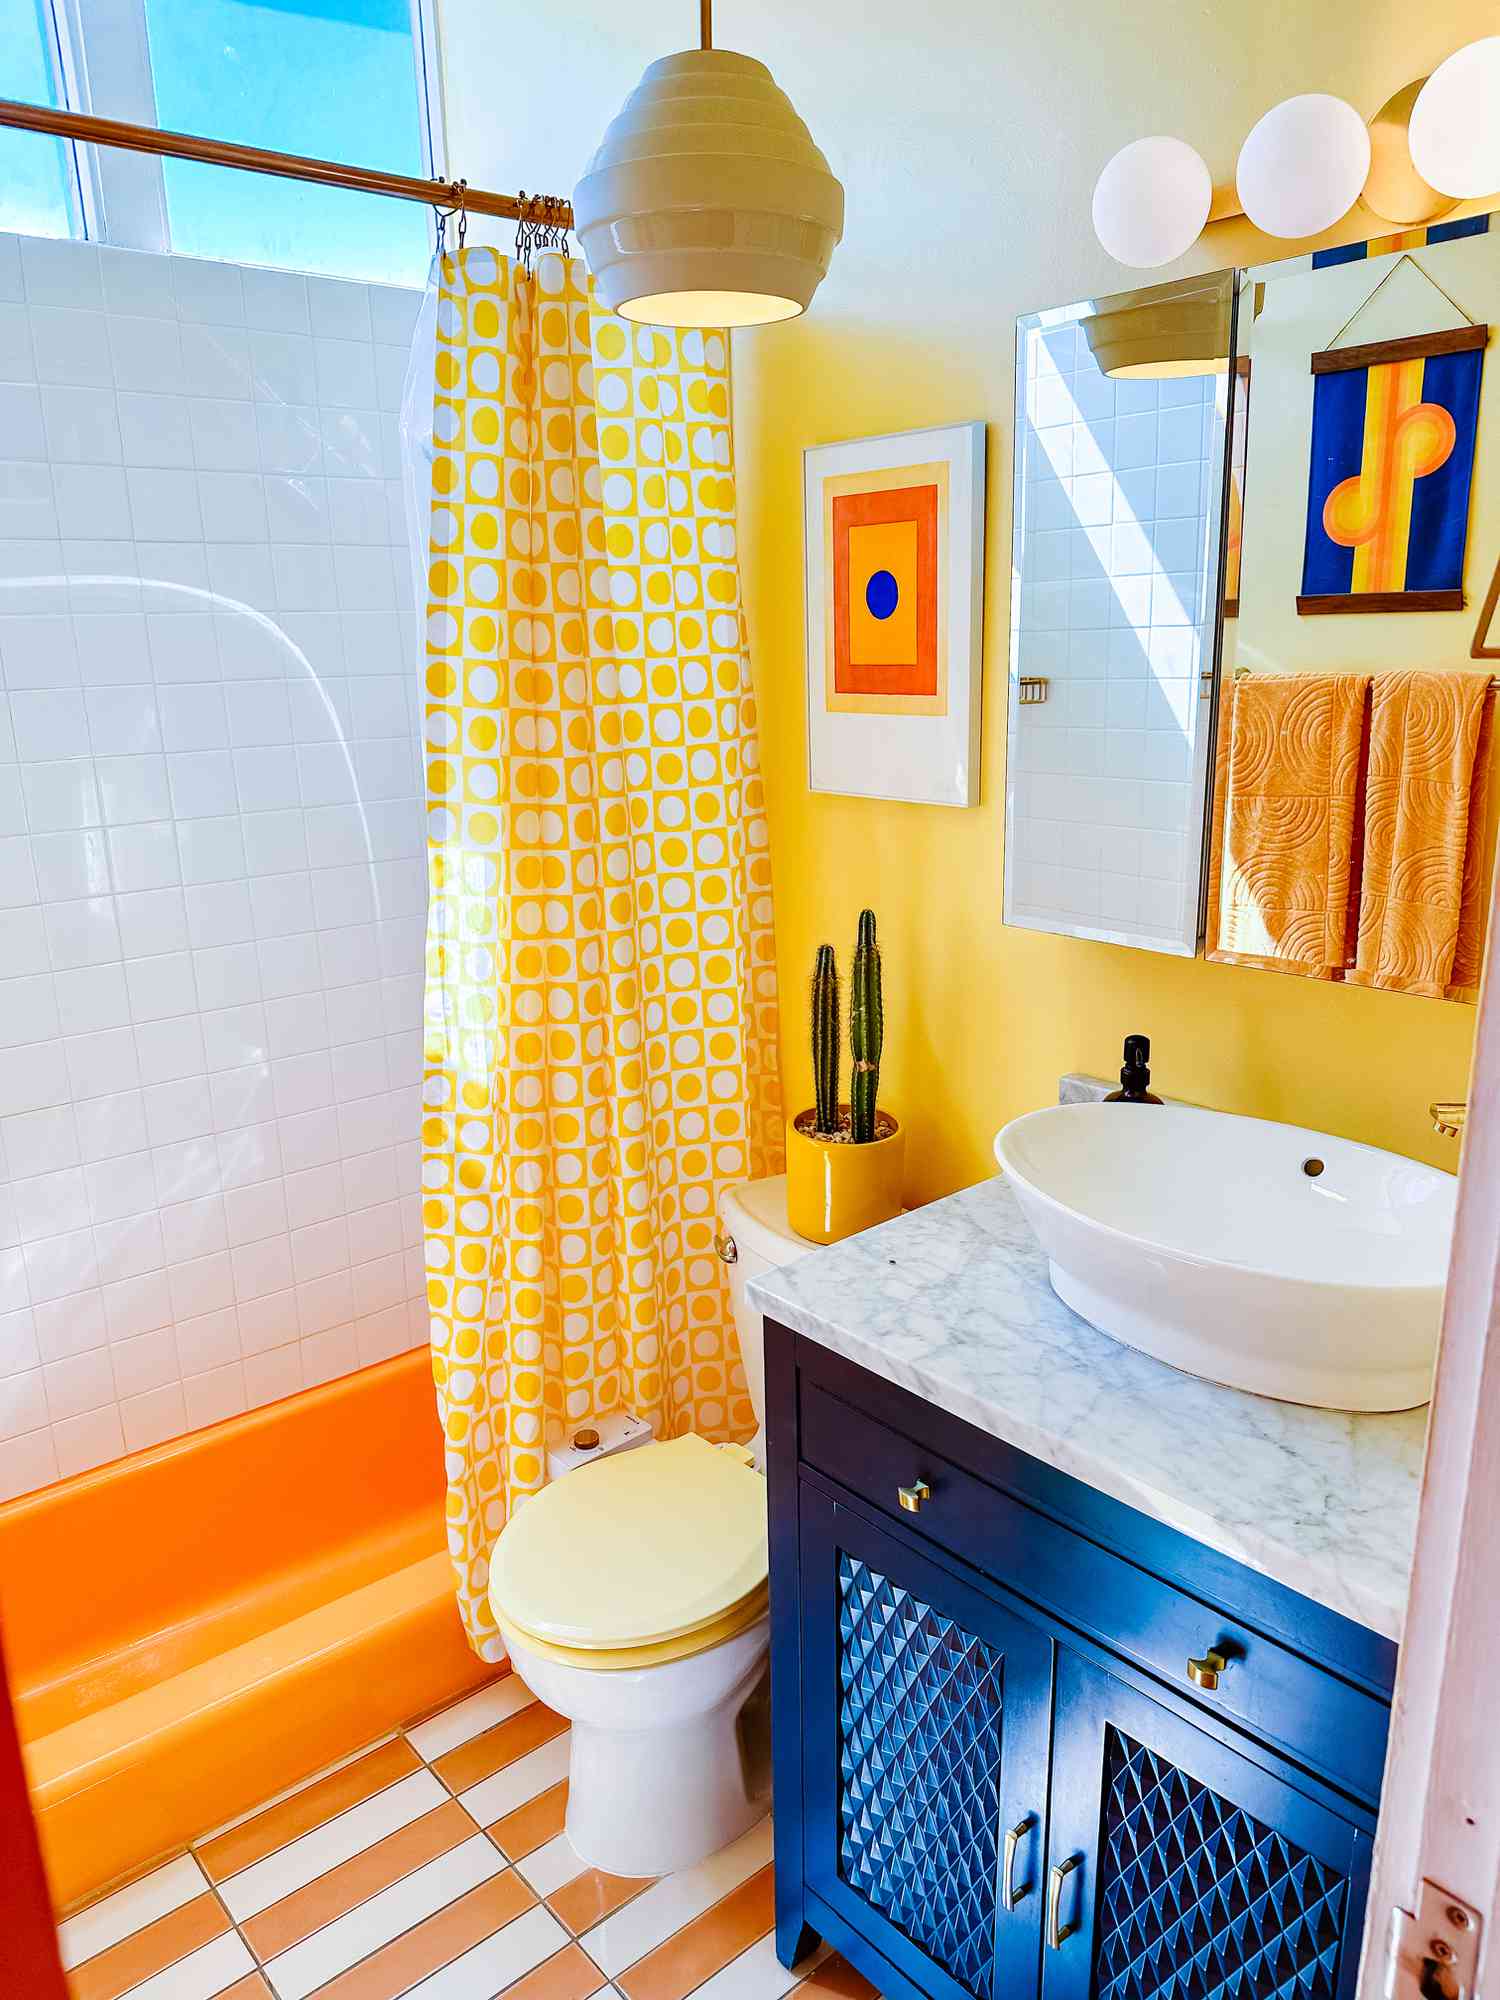 königsblaues, gelbes und oranges Badezimmer